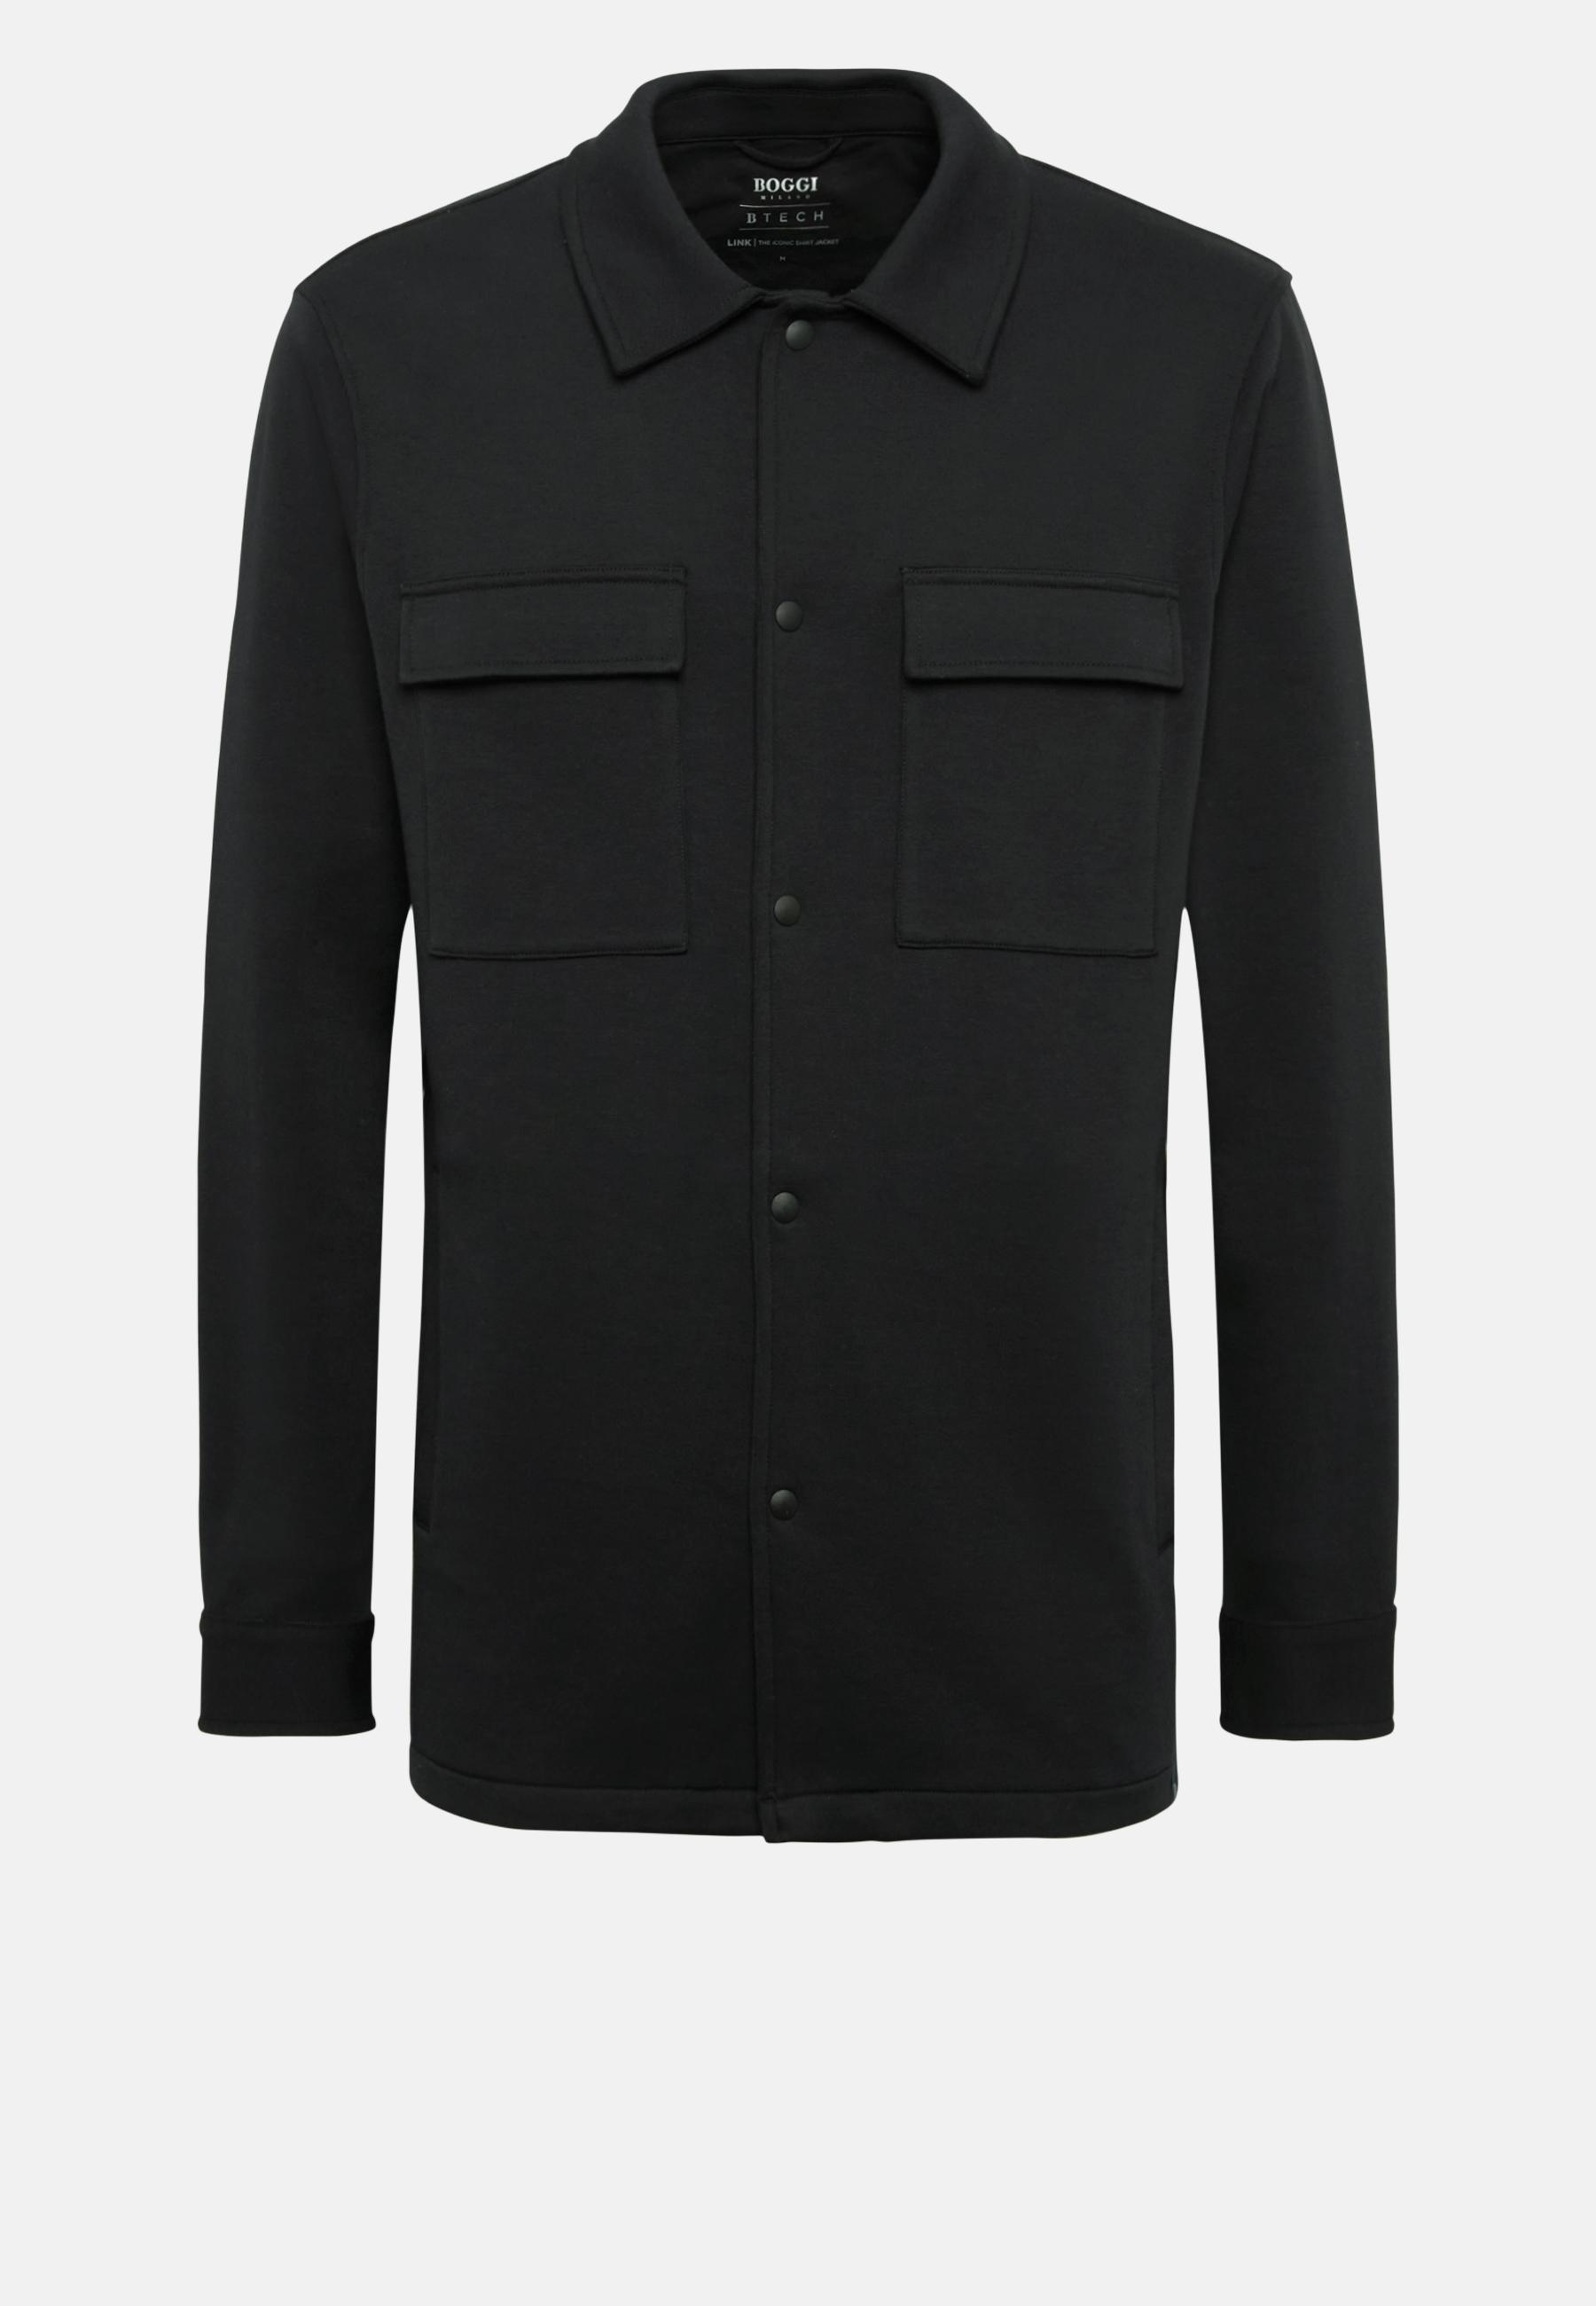 Boggi Milano - Black Sustainable Cotton Link Shirt Jacket